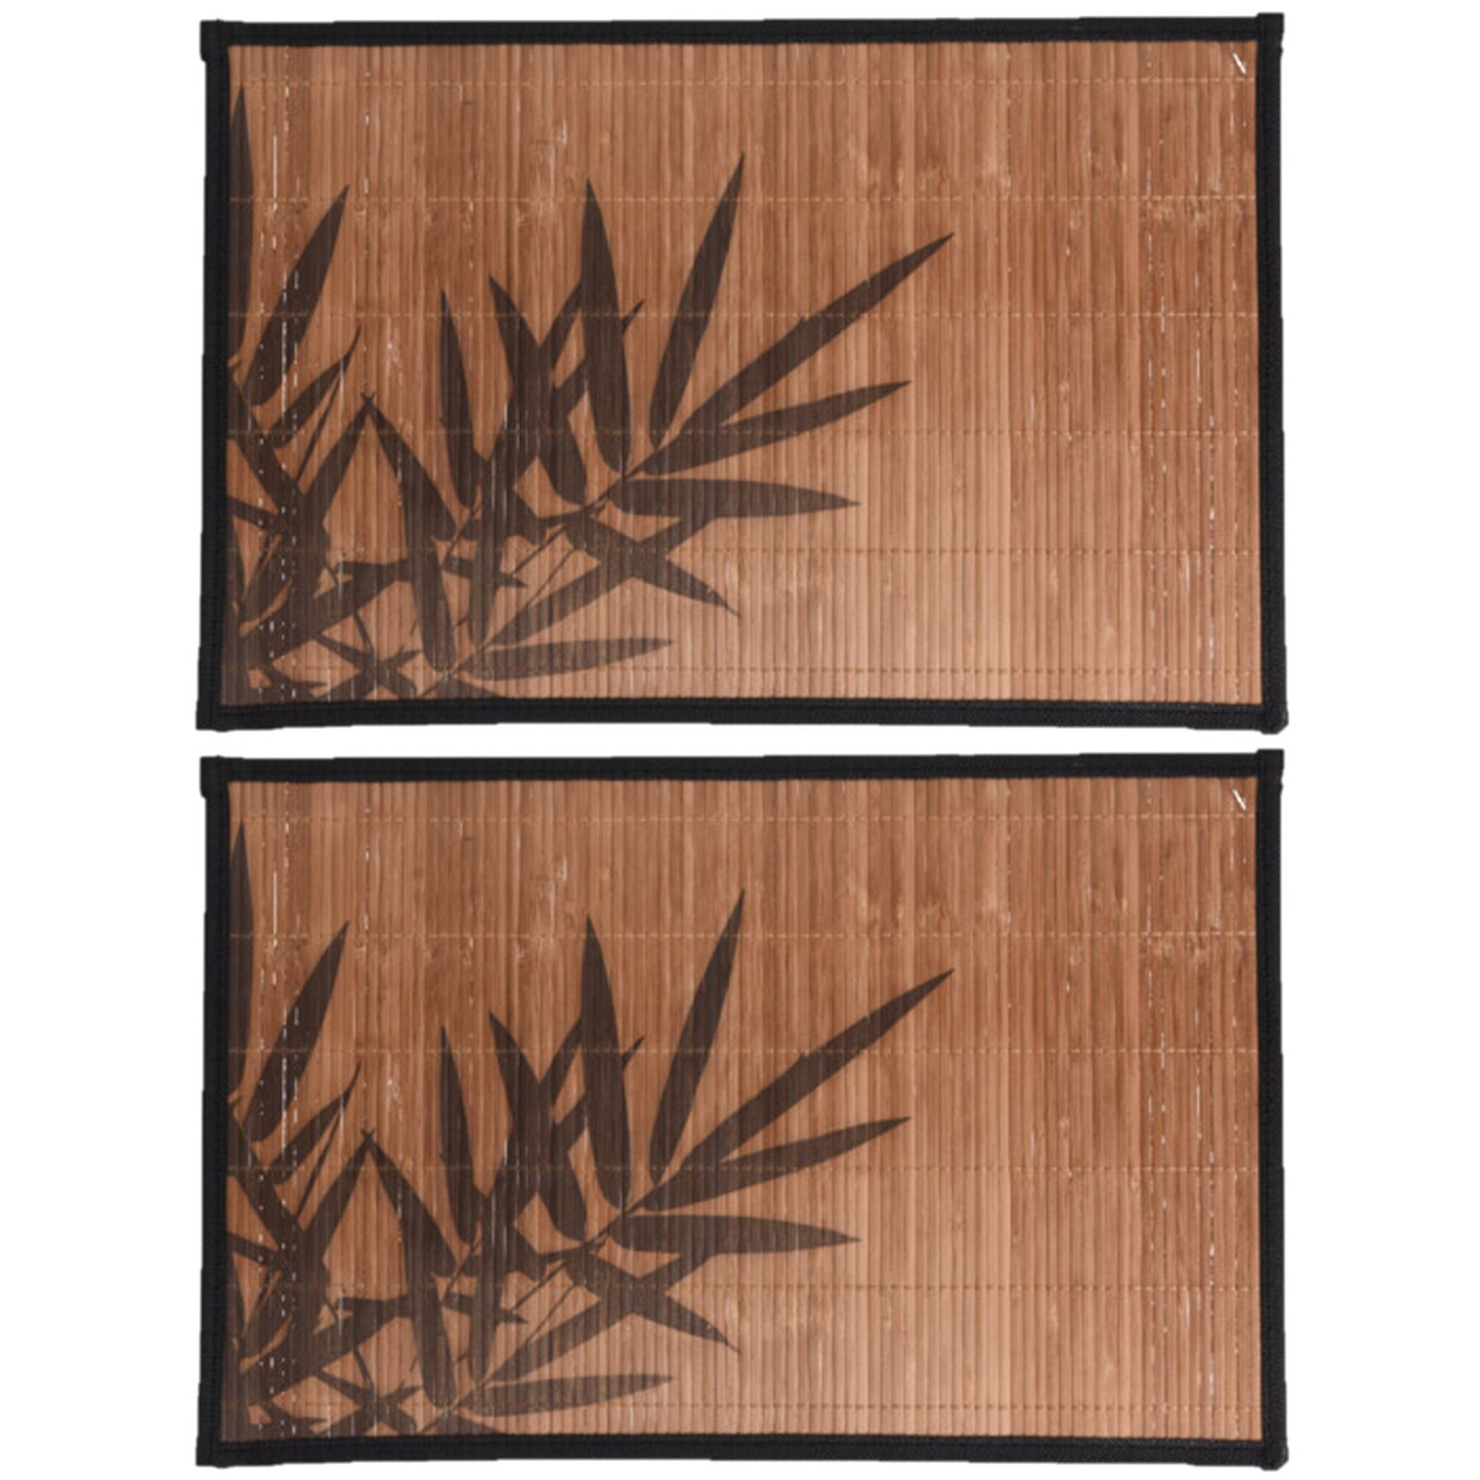 10x stuks rechthoekige placemat 30 x 45 cm bamboe bruin met zwarte bamboe print 2